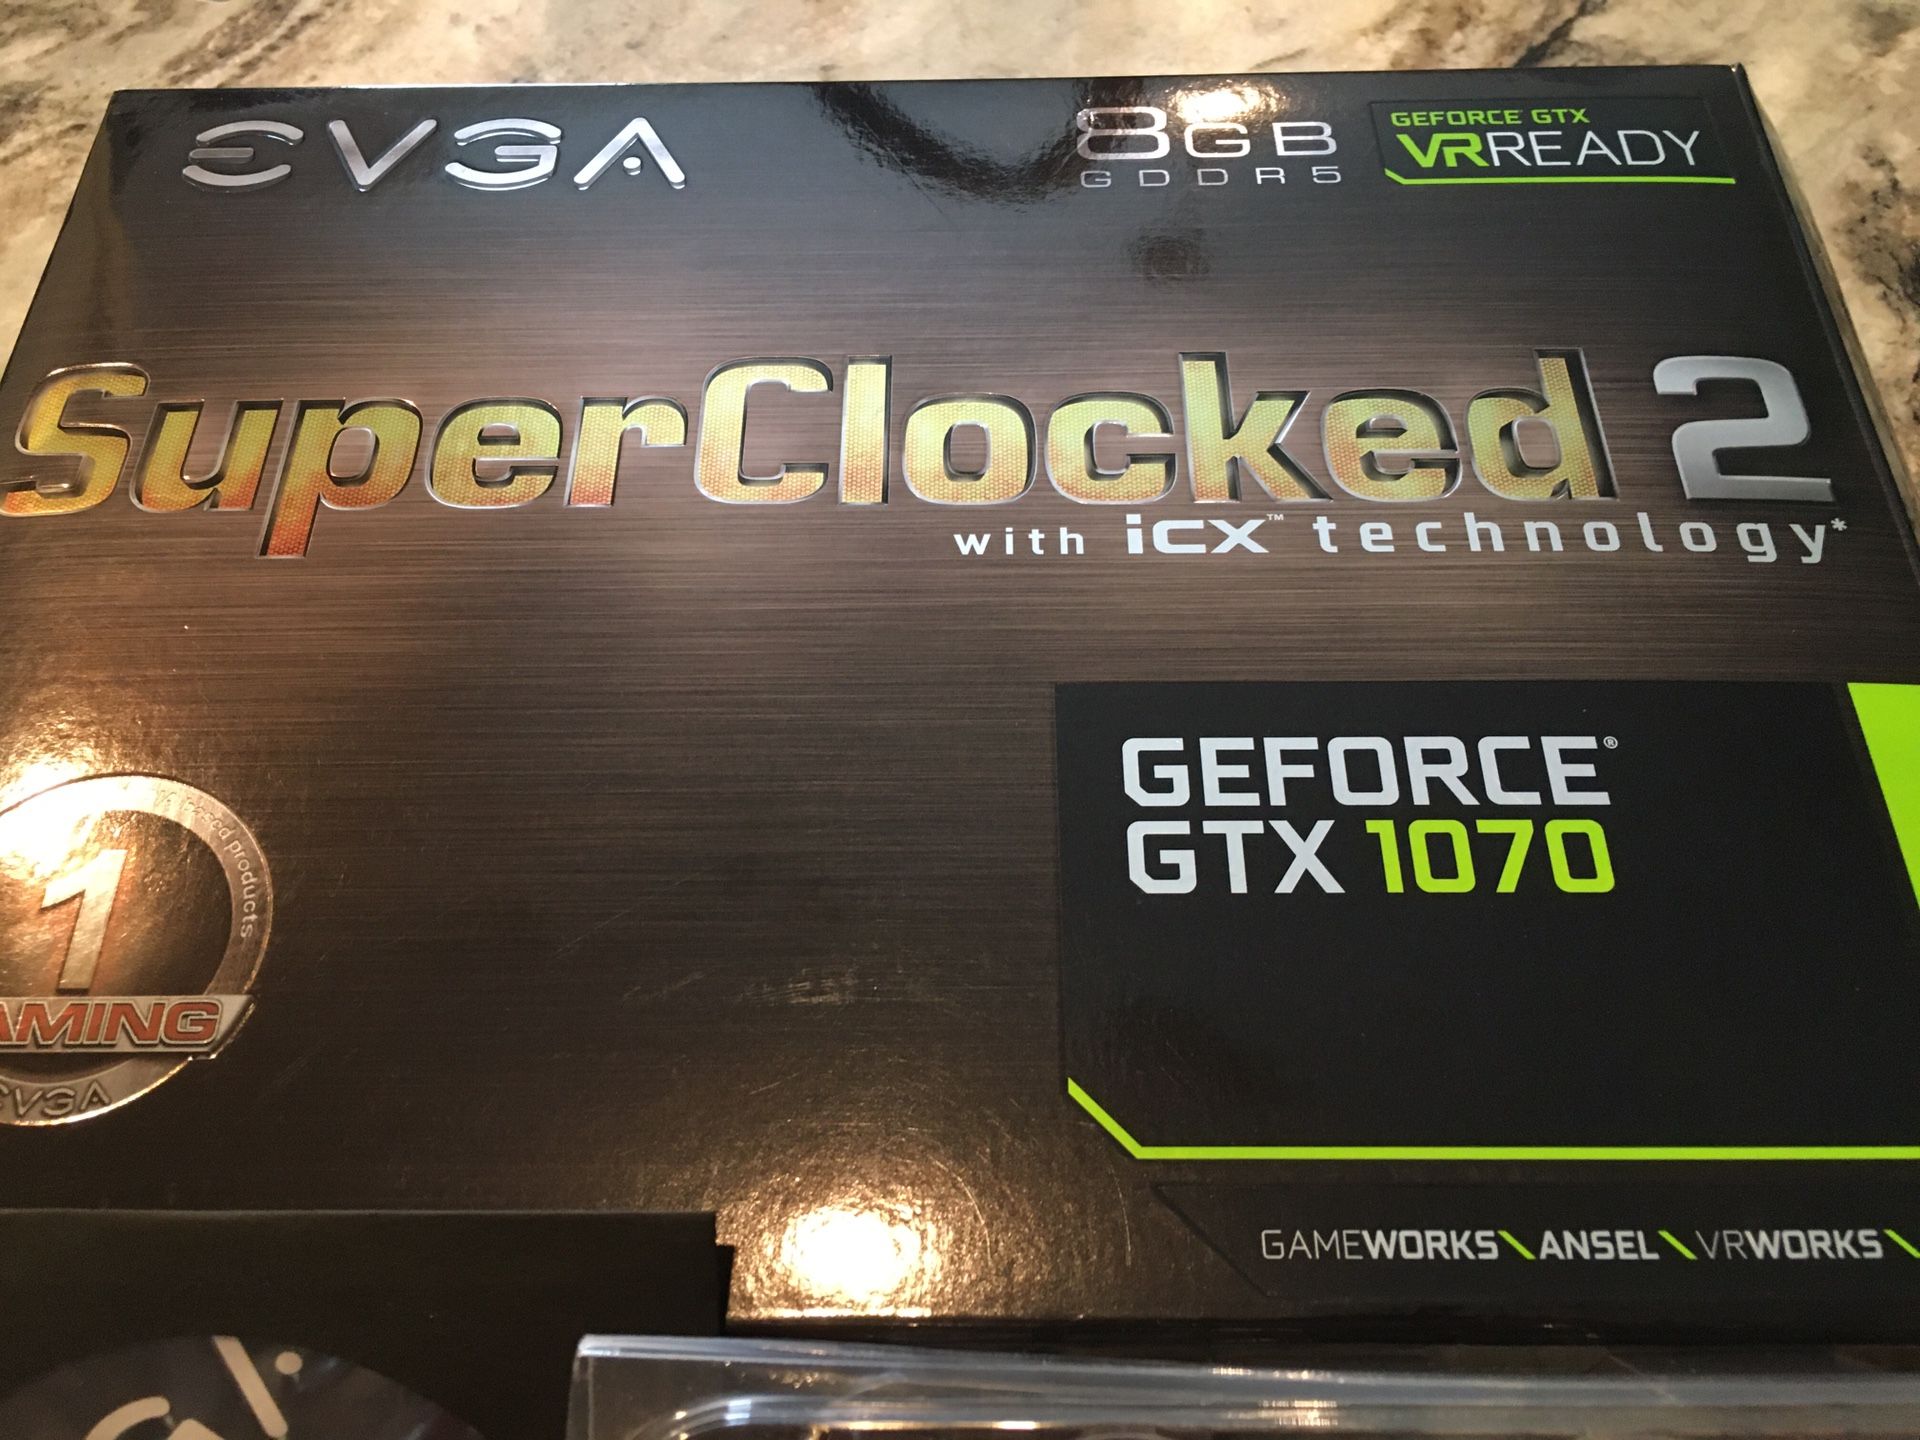 EVGA GTX 1070 Superclocked 2 iCX tech - $235